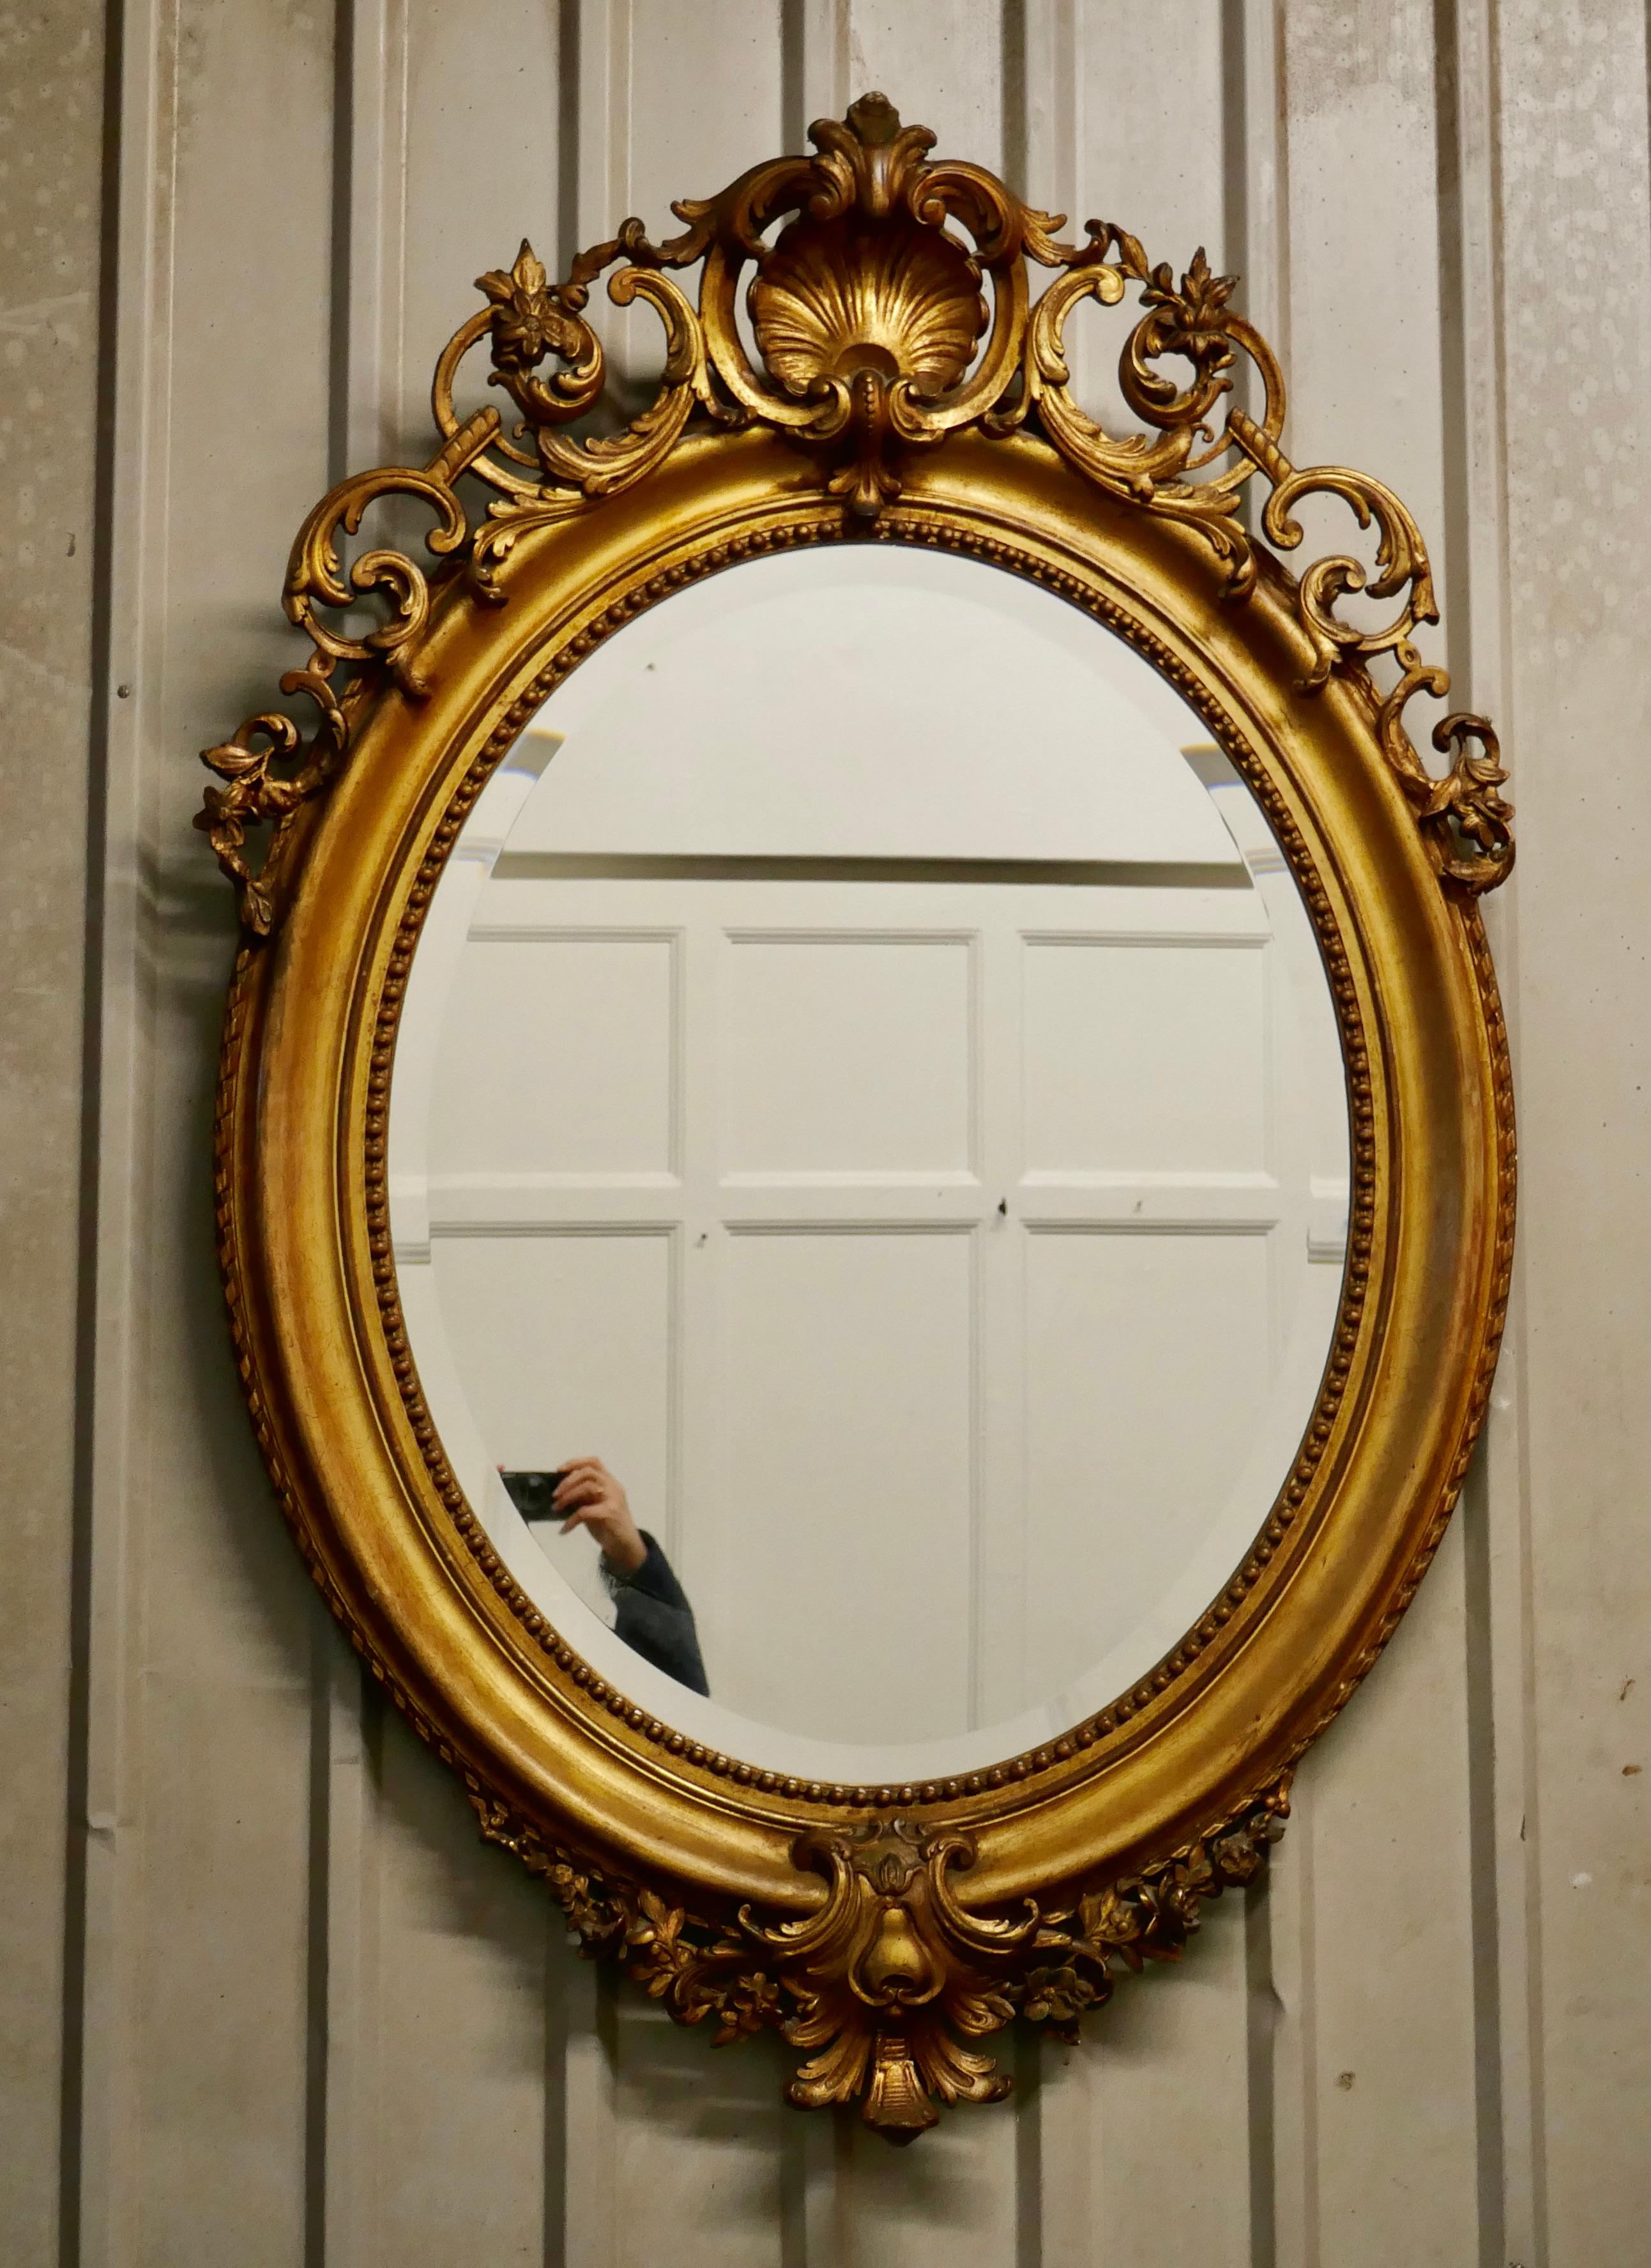 Très grand miroir mural ovale doré de style rococo français

Le miroir a un cadre doré exquis de style rococo, il est décoré de manière élaborée avec des coquillages, des guirlandes et des feuilles avec un bord en corde soigné.
Le grand cadre ovale,